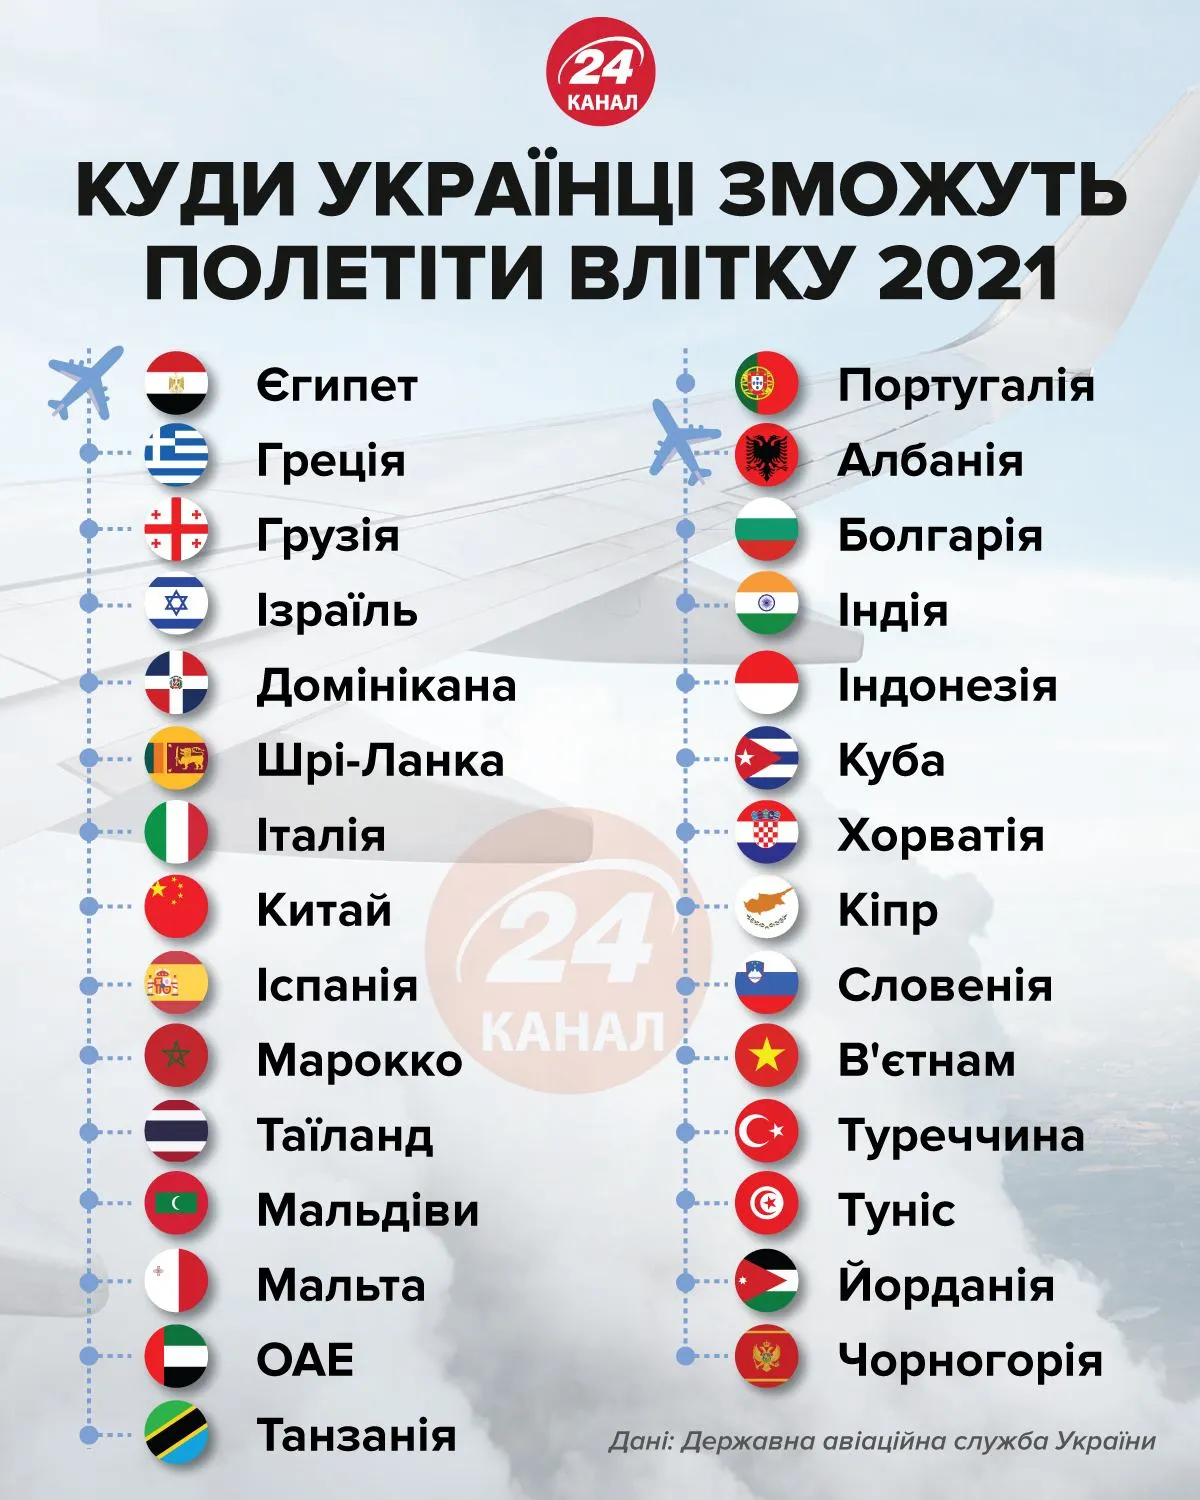 Куда украинцы смогут улететь инфографика 24 канал